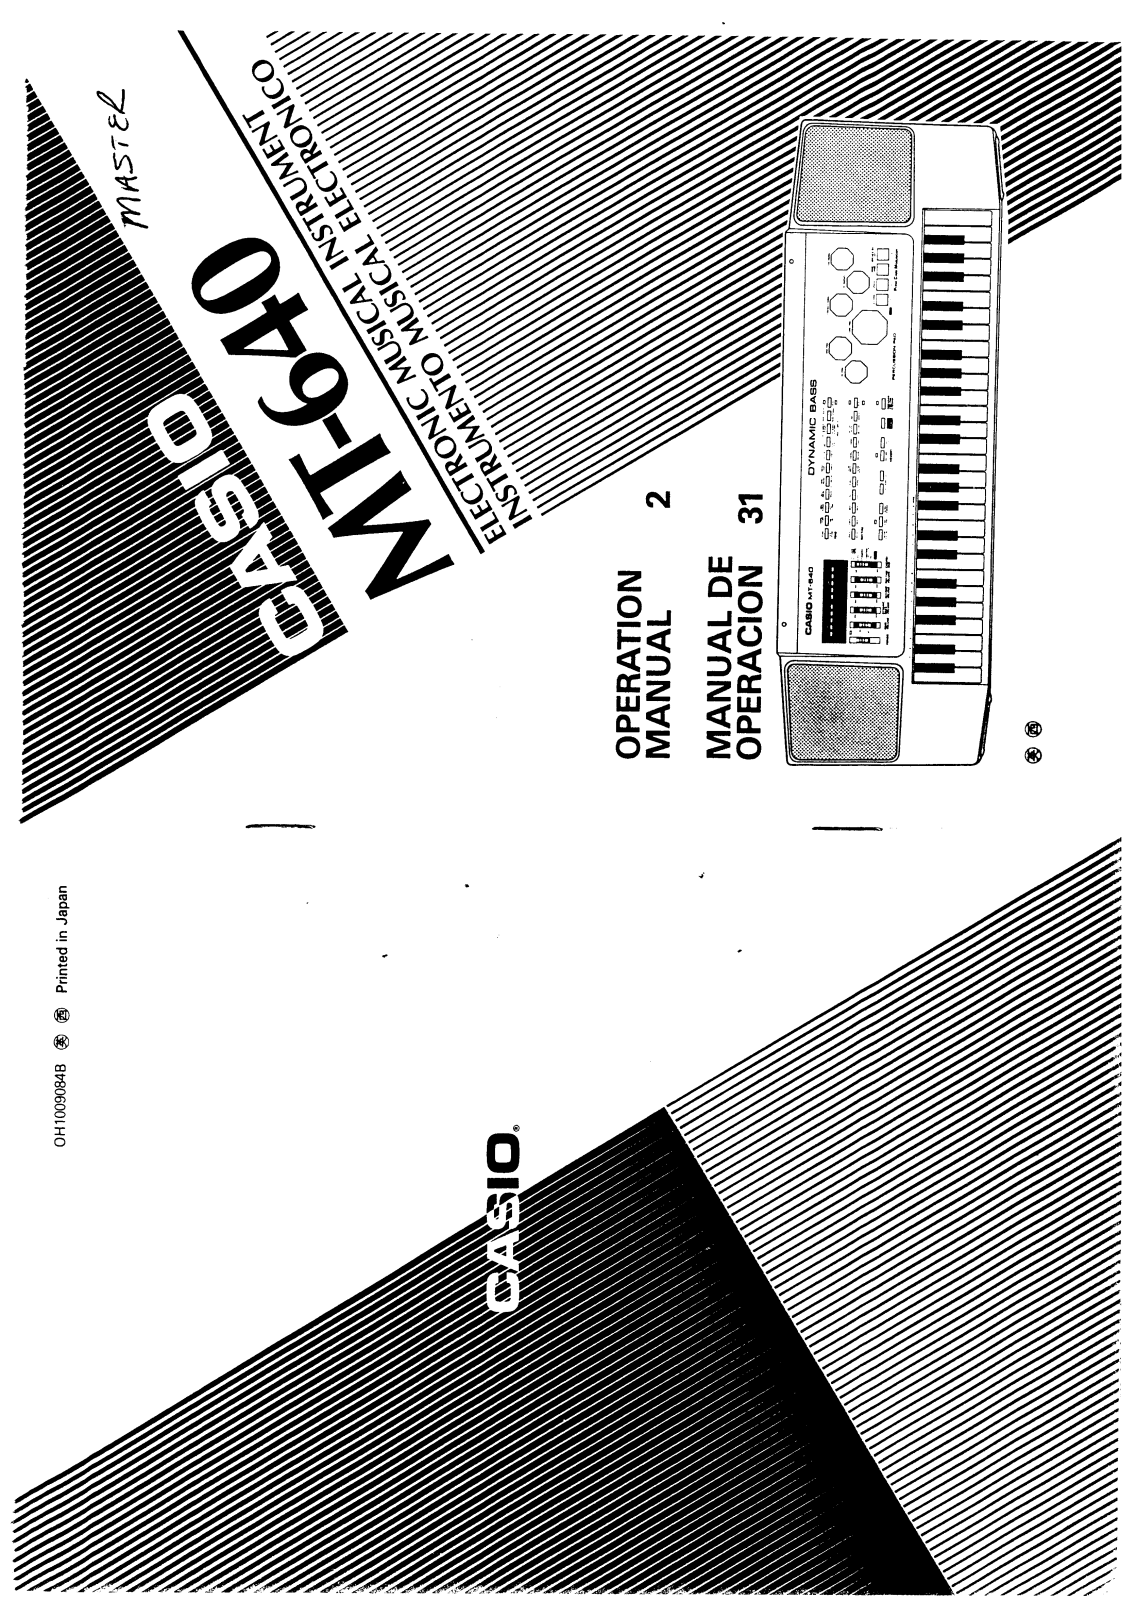 Casio MT-640 User Manual